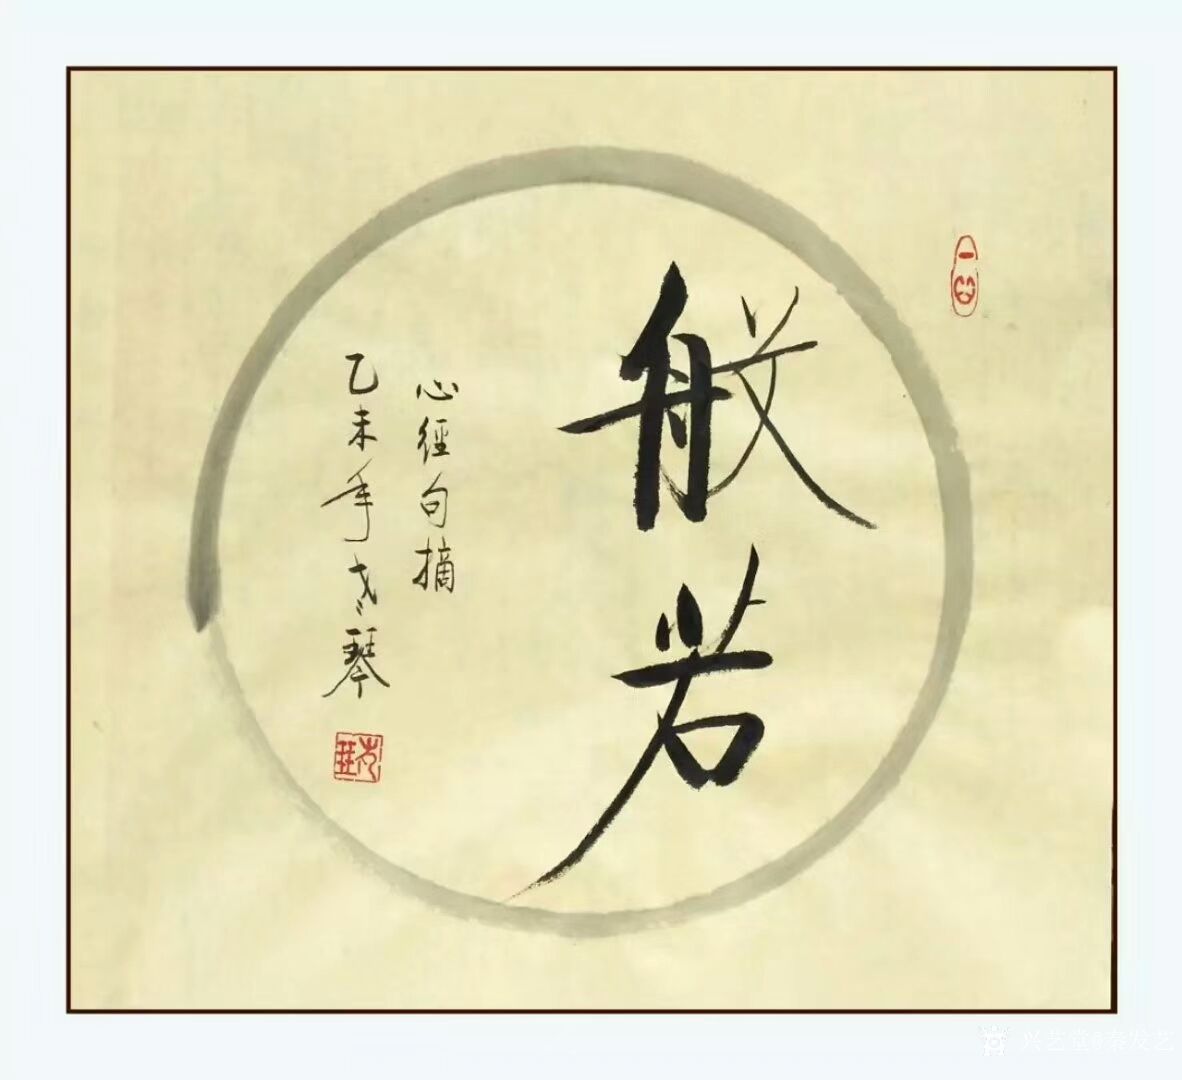 艺术家秦发艺日记:般若(bō rě)是梵文,翻译为智慧,但这"智慧"在佛教